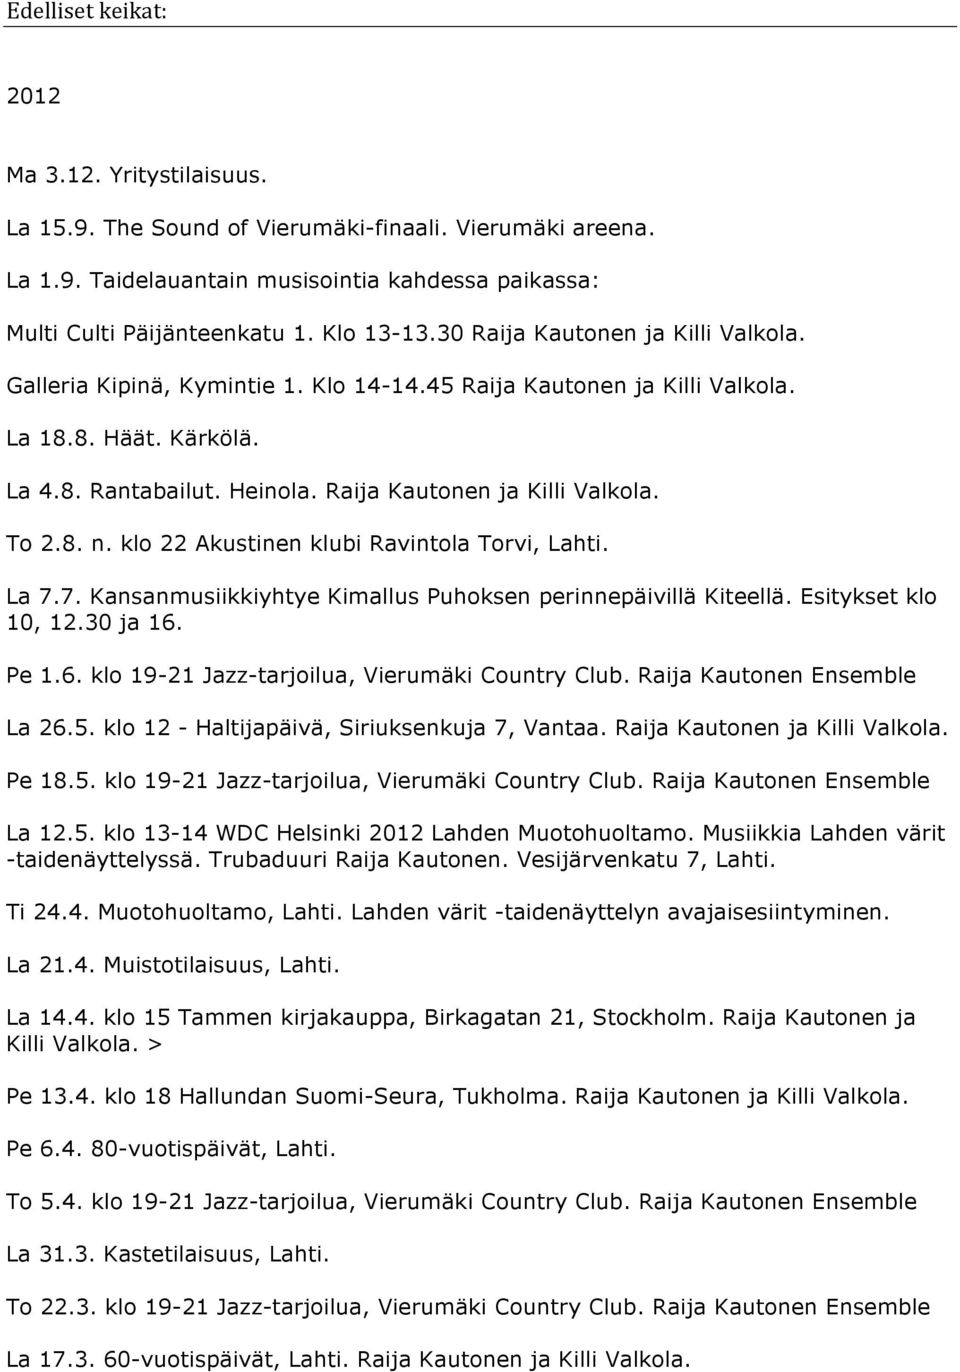 Raija Kautonen ja Killi Valkola. To 2.8. n. klo 22 Akustinen klubi Ravintola Torvi, Lahti. La 7.7. Kansanmusiikkiyhtye Kimallus Puhoksen perinnepäivillä Kiteellä. Esitykset klo 10, 12.30 ja 16. Pe 1.